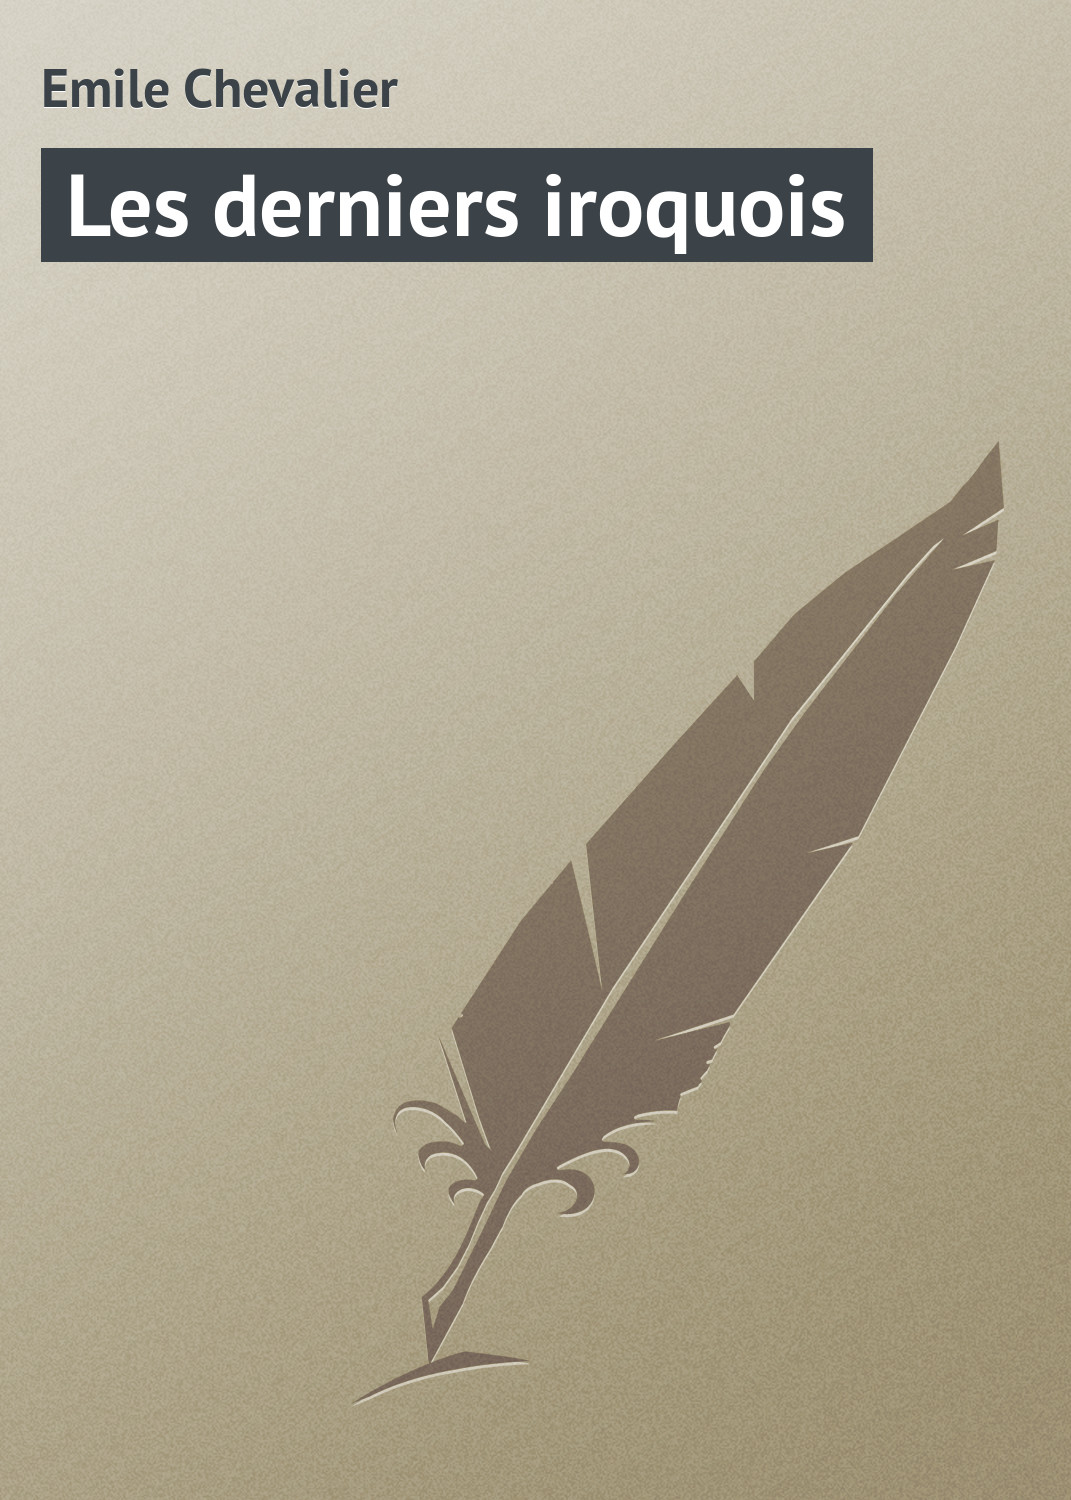 Книга Les derniers iroquois из серии , созданная Emile Chevalier, может относится к жанру Зарубежная старинная литература, Зарубежная классика. Стоимость электронной книги Les derniers iroquois с идентификатором 21105910 составляет 5.99 руб.